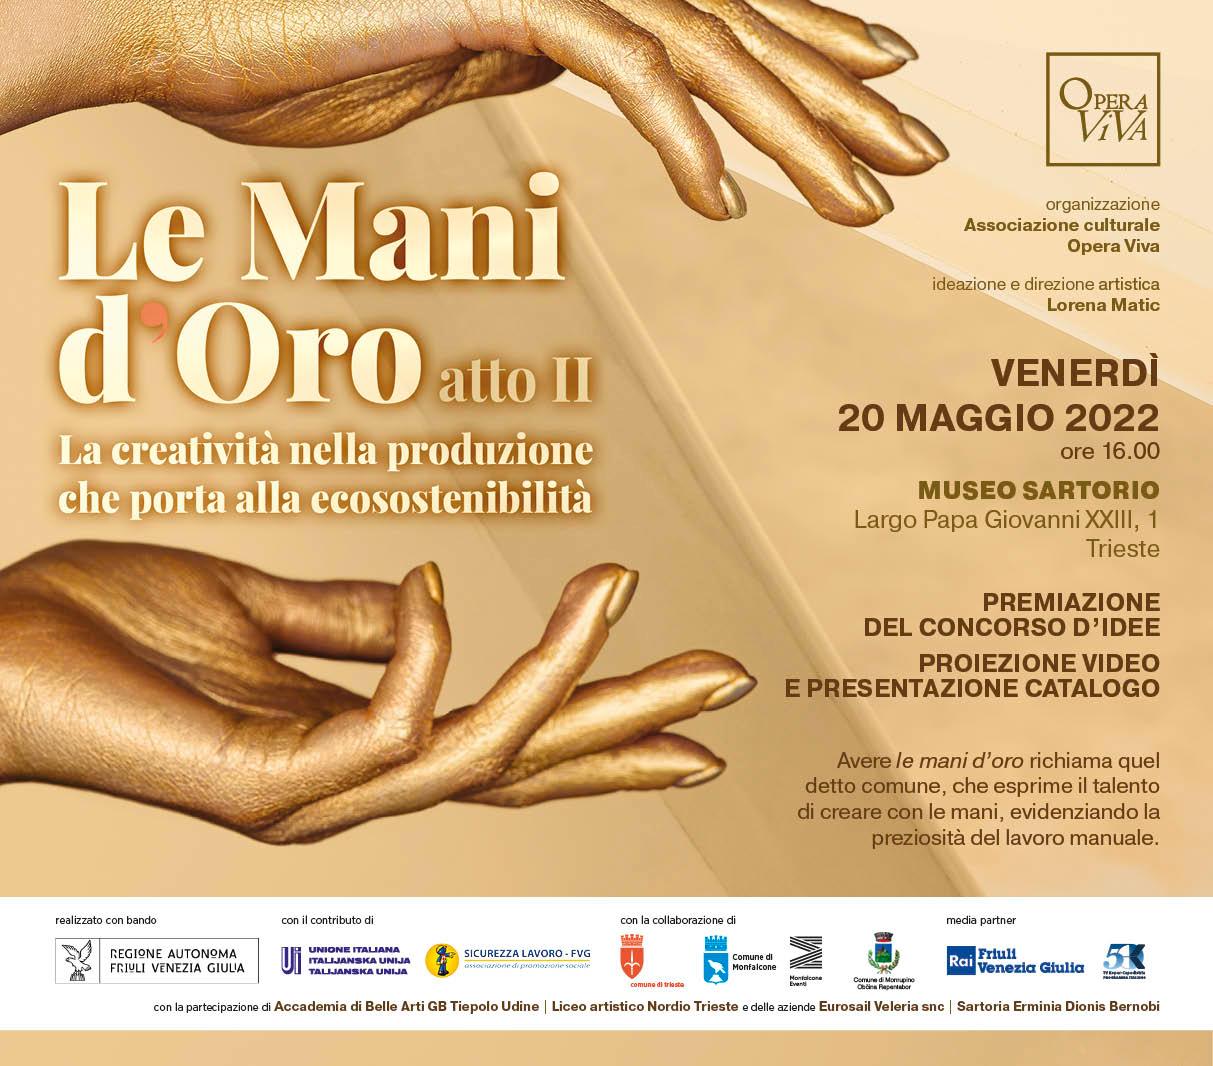 Al momento stai visualizzando “Le mani d’oro”, premiazione del concorso d’idee venerdì 20 maggio al Museo Sartorio di Trieste